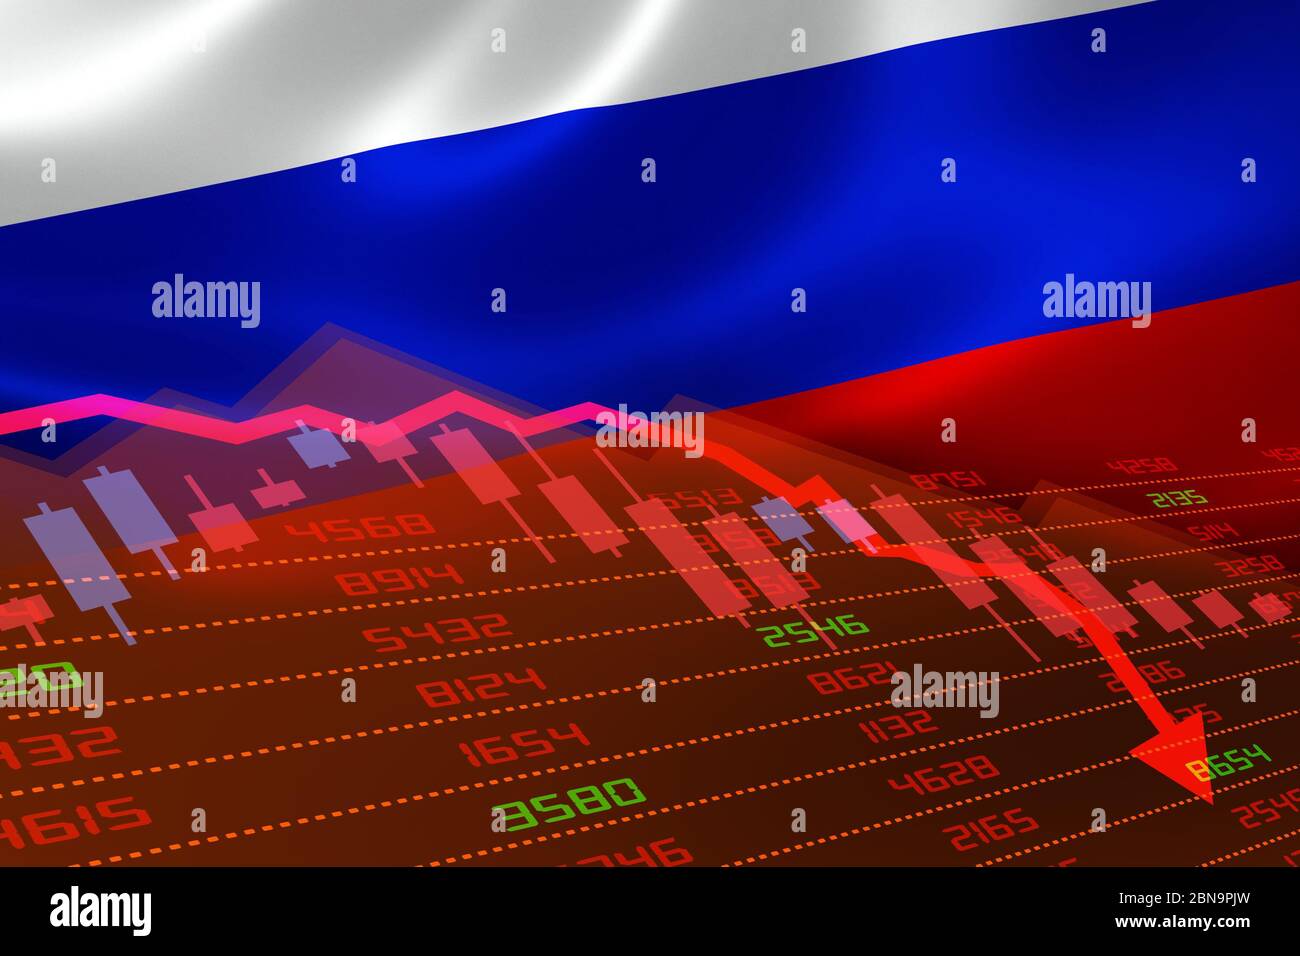 Der wirtschaftliche Abschwung in Russland, an der Börse zeigt sich der Aktienchart nach unten und im roten negativen Bereich. Geschäfts- und Finanzgeldmarktkrise Stockfoto